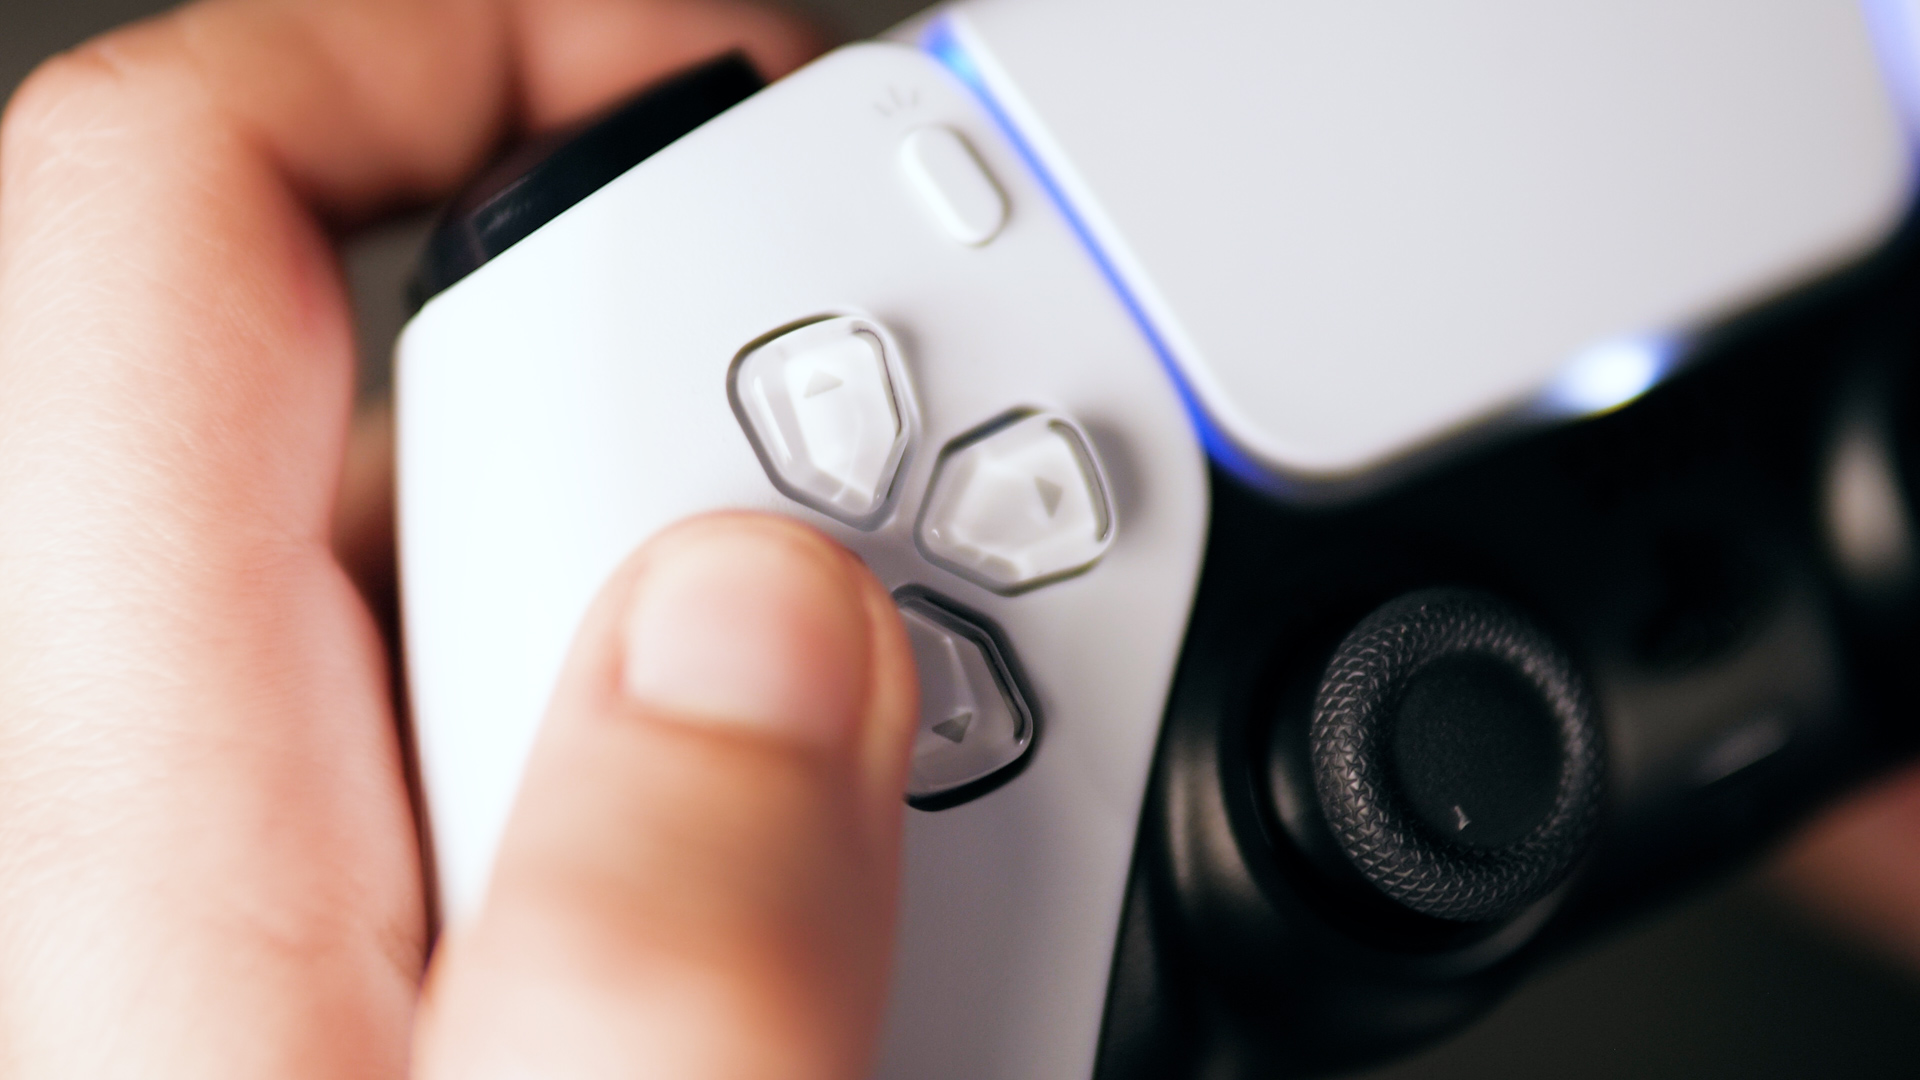 PlayStation Portal : prix, date de sortie, design tout ce que l'on sait  sur la PS5 portable - Numerama